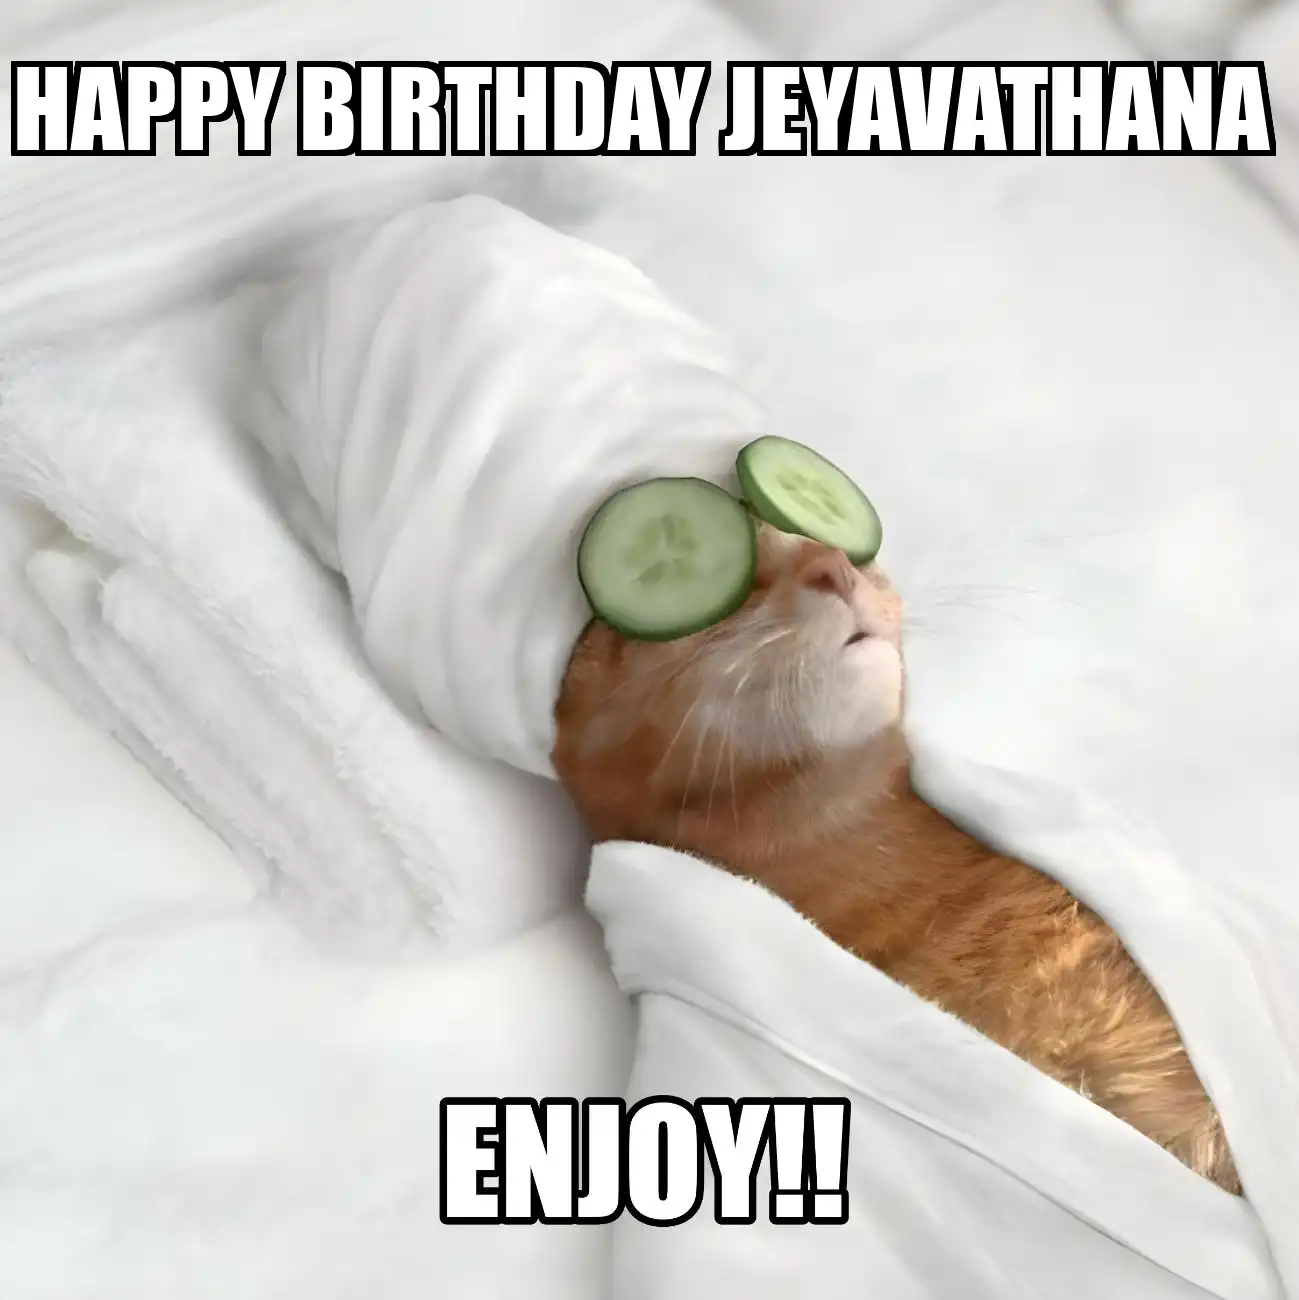 Happy Birthday Jeyavathana Enjoy Cat Meme